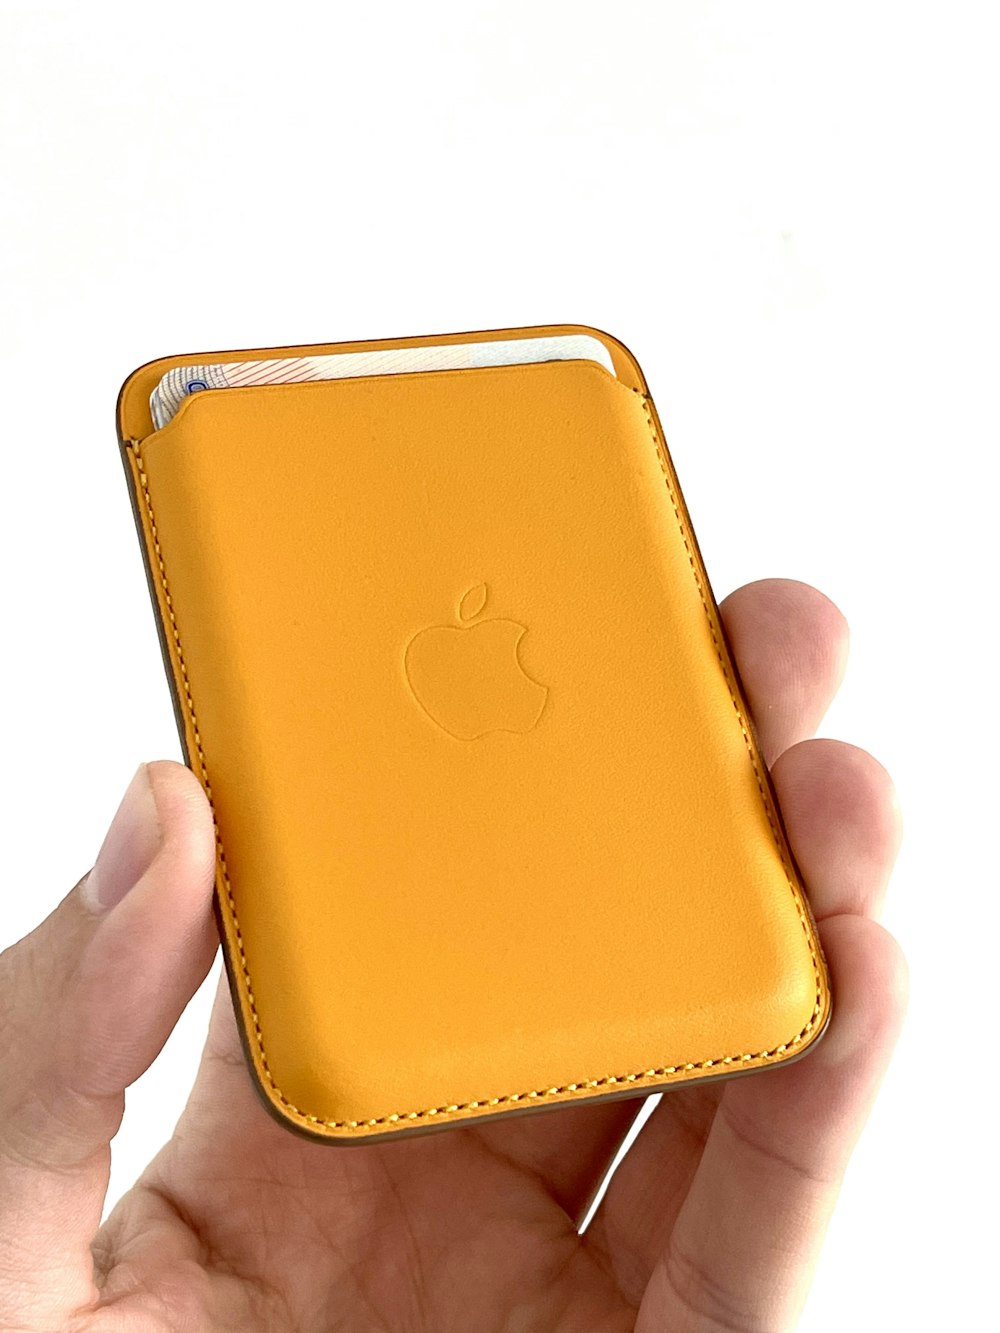 Persona sosteniendo una funda dorada para iPhone de Apple